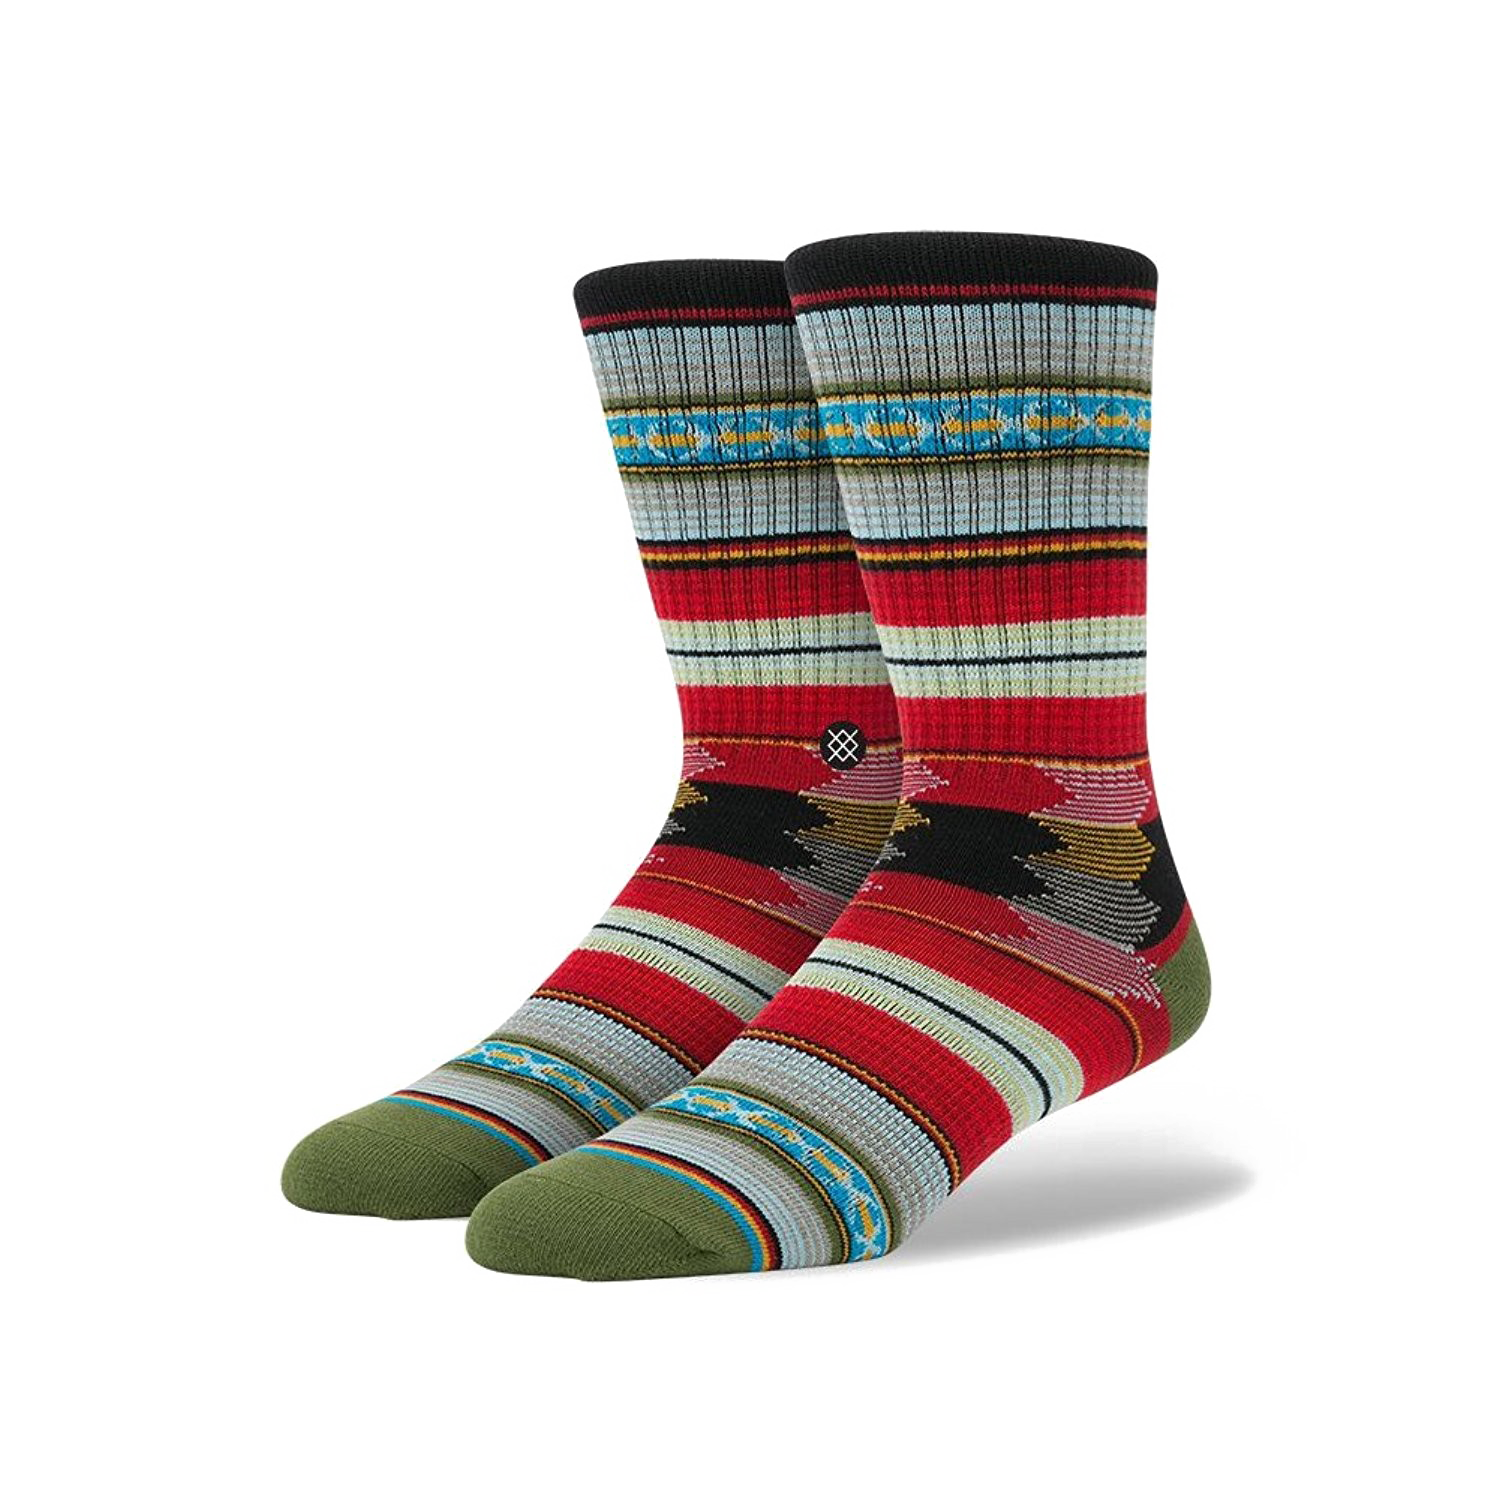 Socks PNG Transparent Image